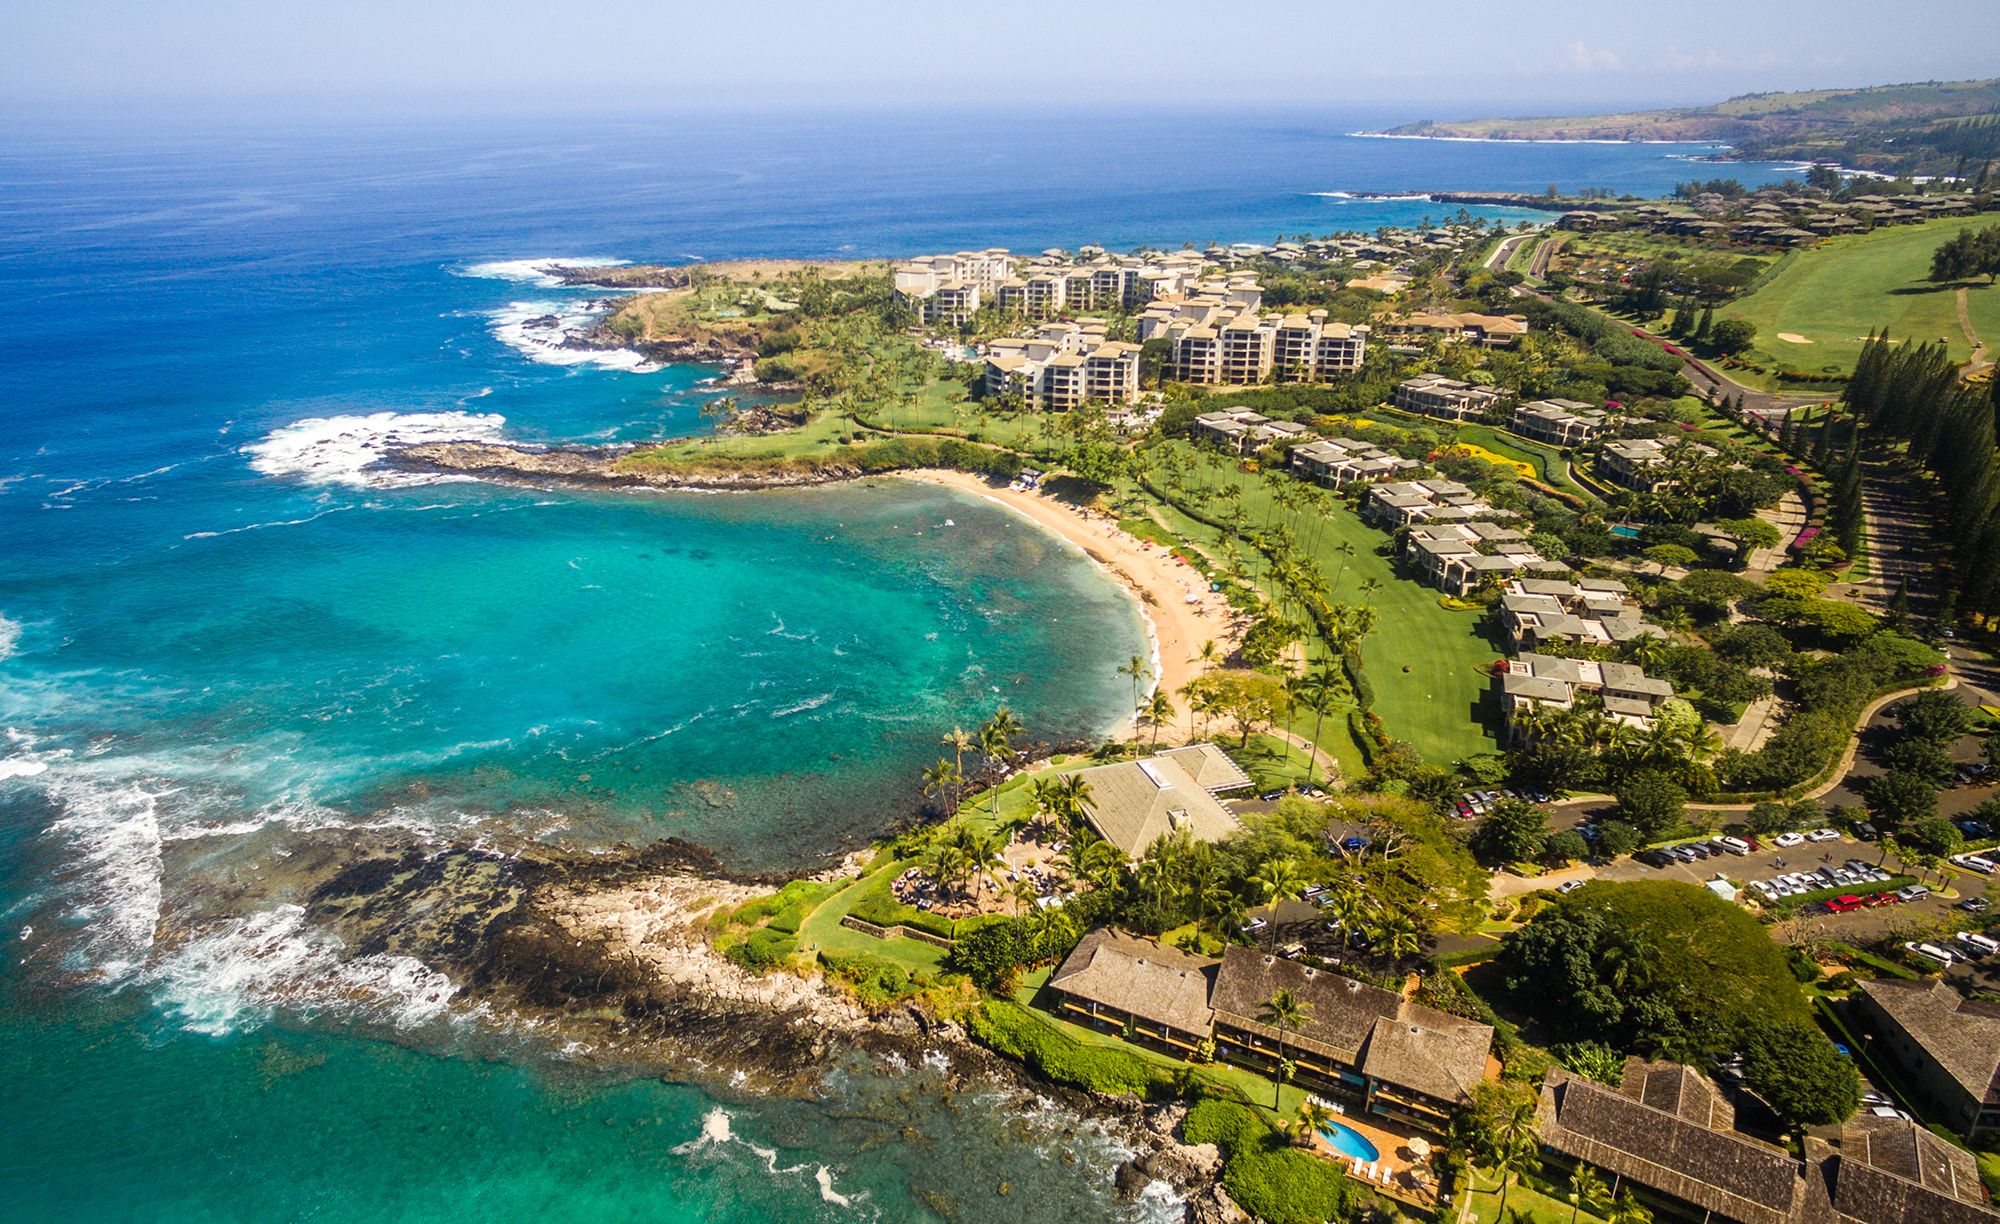 mudarse a Maui: Preguntas frecuentes sobre vivir en Hawái 2